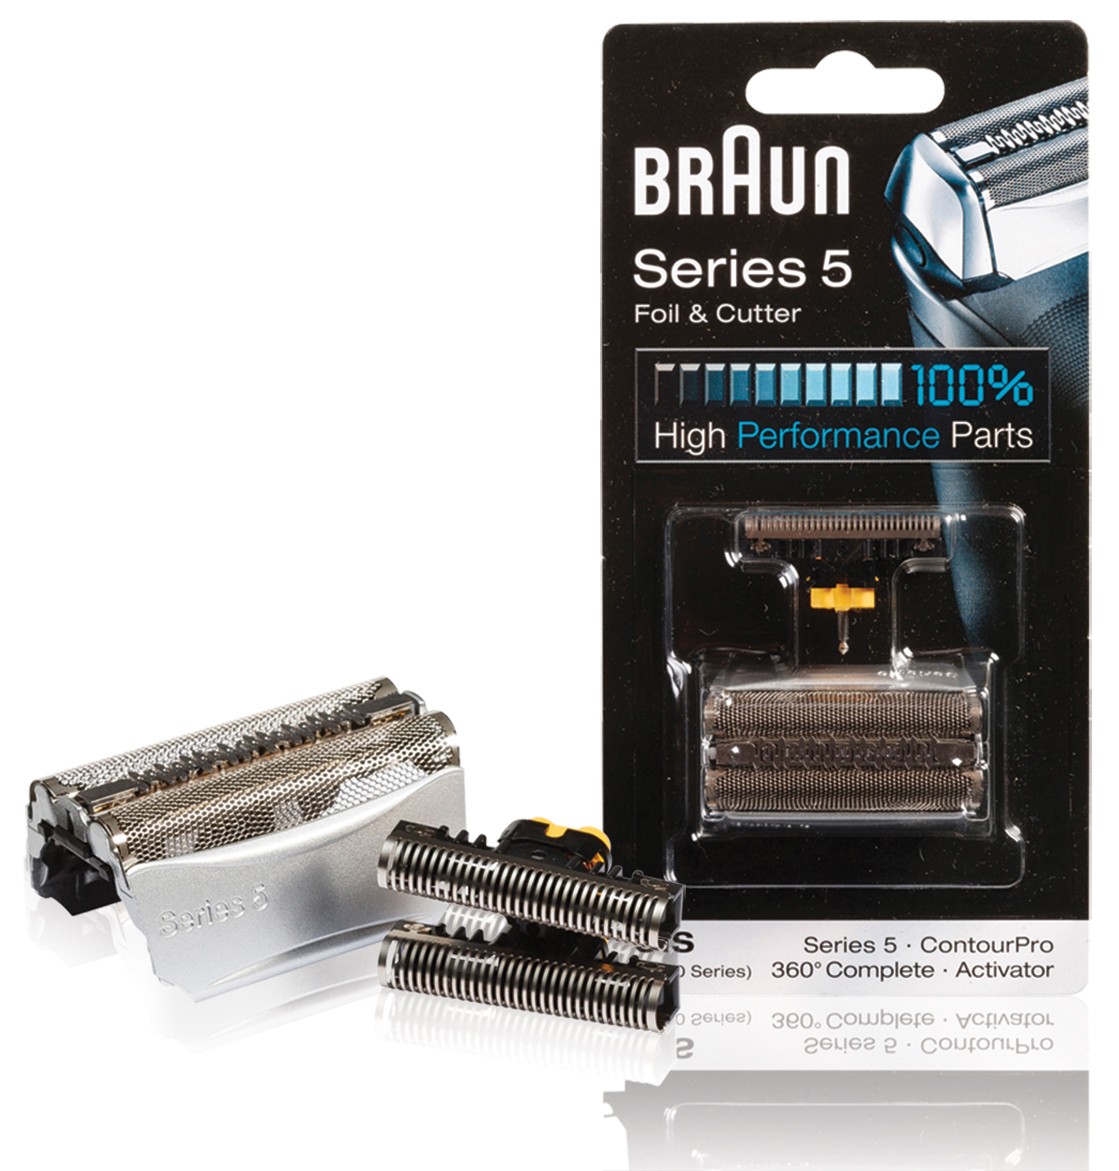 Braun BR-KP8000